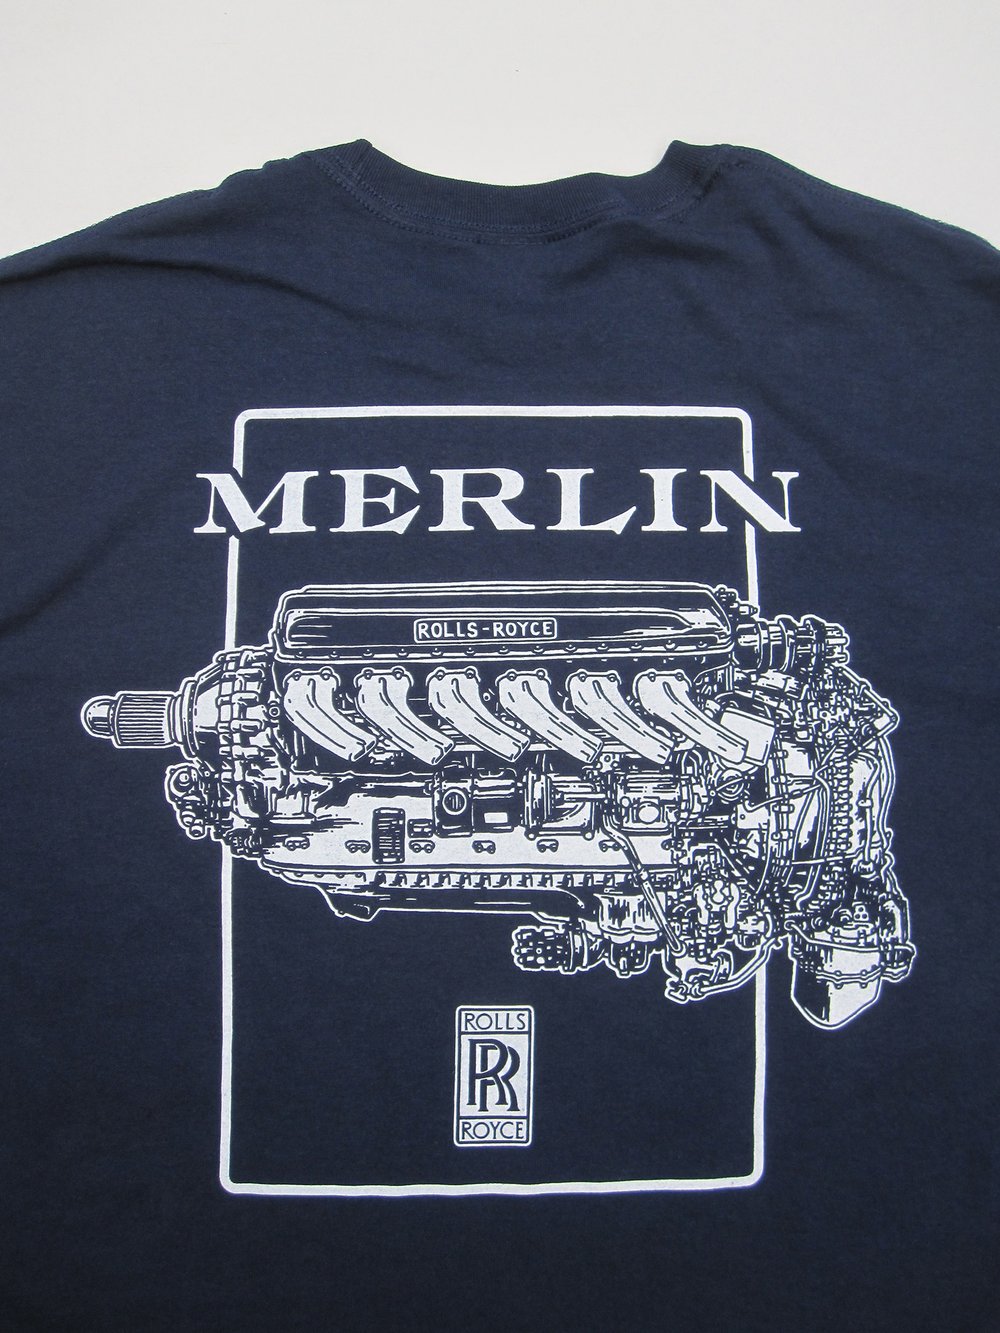 Image of Horsepower IV "merlin"